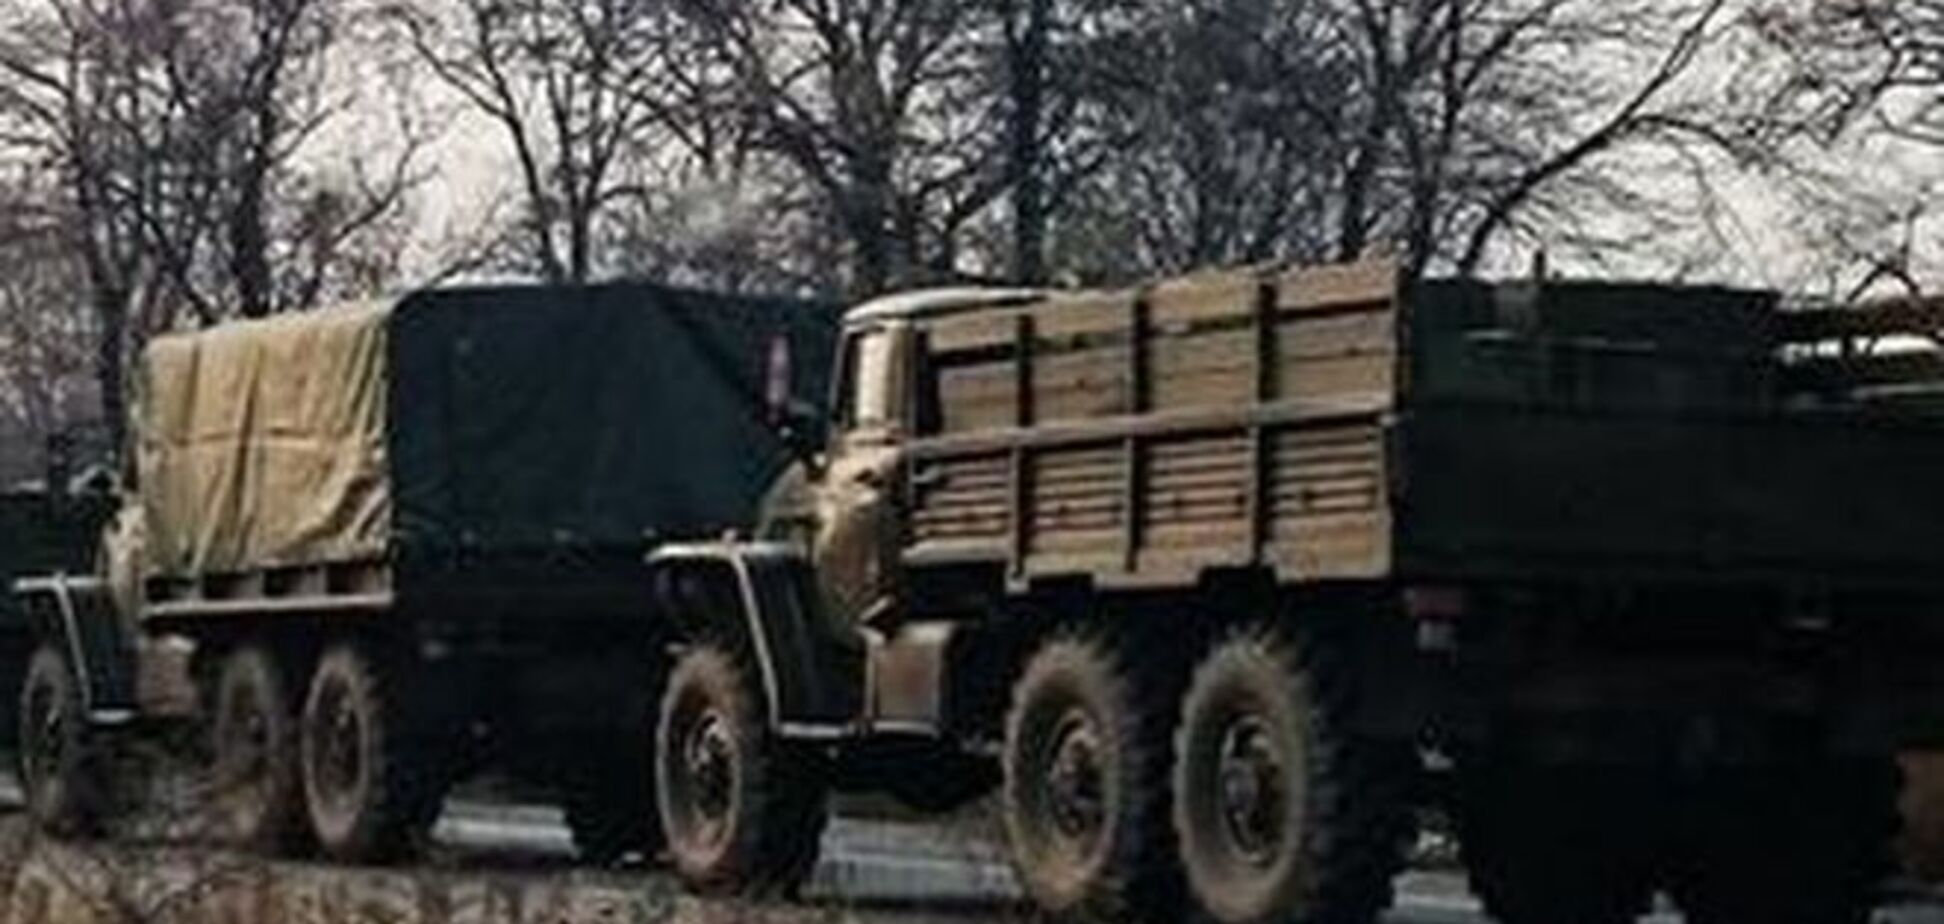 Журналист показал видео военной техники РФ в Донецке: день, когда завтра была война, все ближе